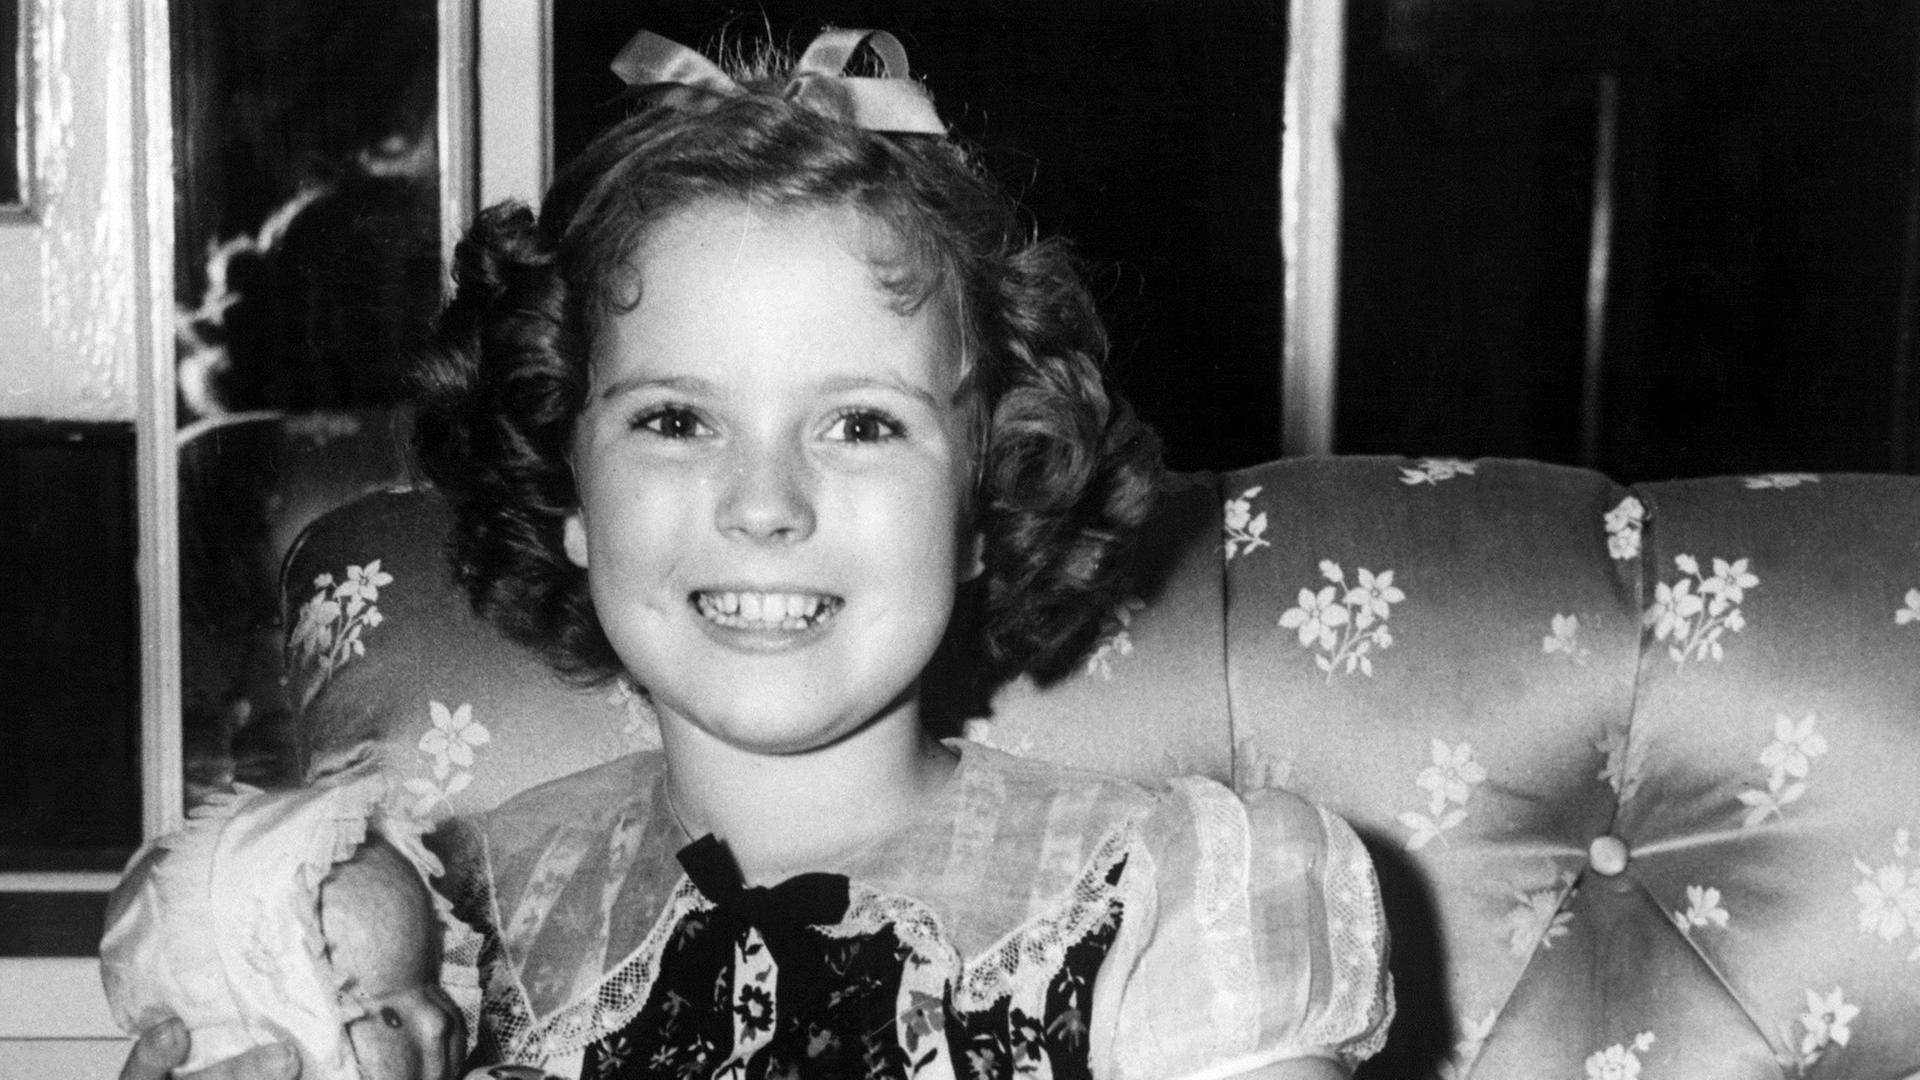 Der Kinderstar Shirley Temple im Jahr 1938. Am 23.4.2003 feiert Temple ihren 75. Geburtstag. In über 40 Filmen spielte sie mit, doch die meisten davon hatte sie bereits abgedreht, bevor sie ihren 10. Geburtstag feierte. Von 1935 ab war sie einige Jahre la